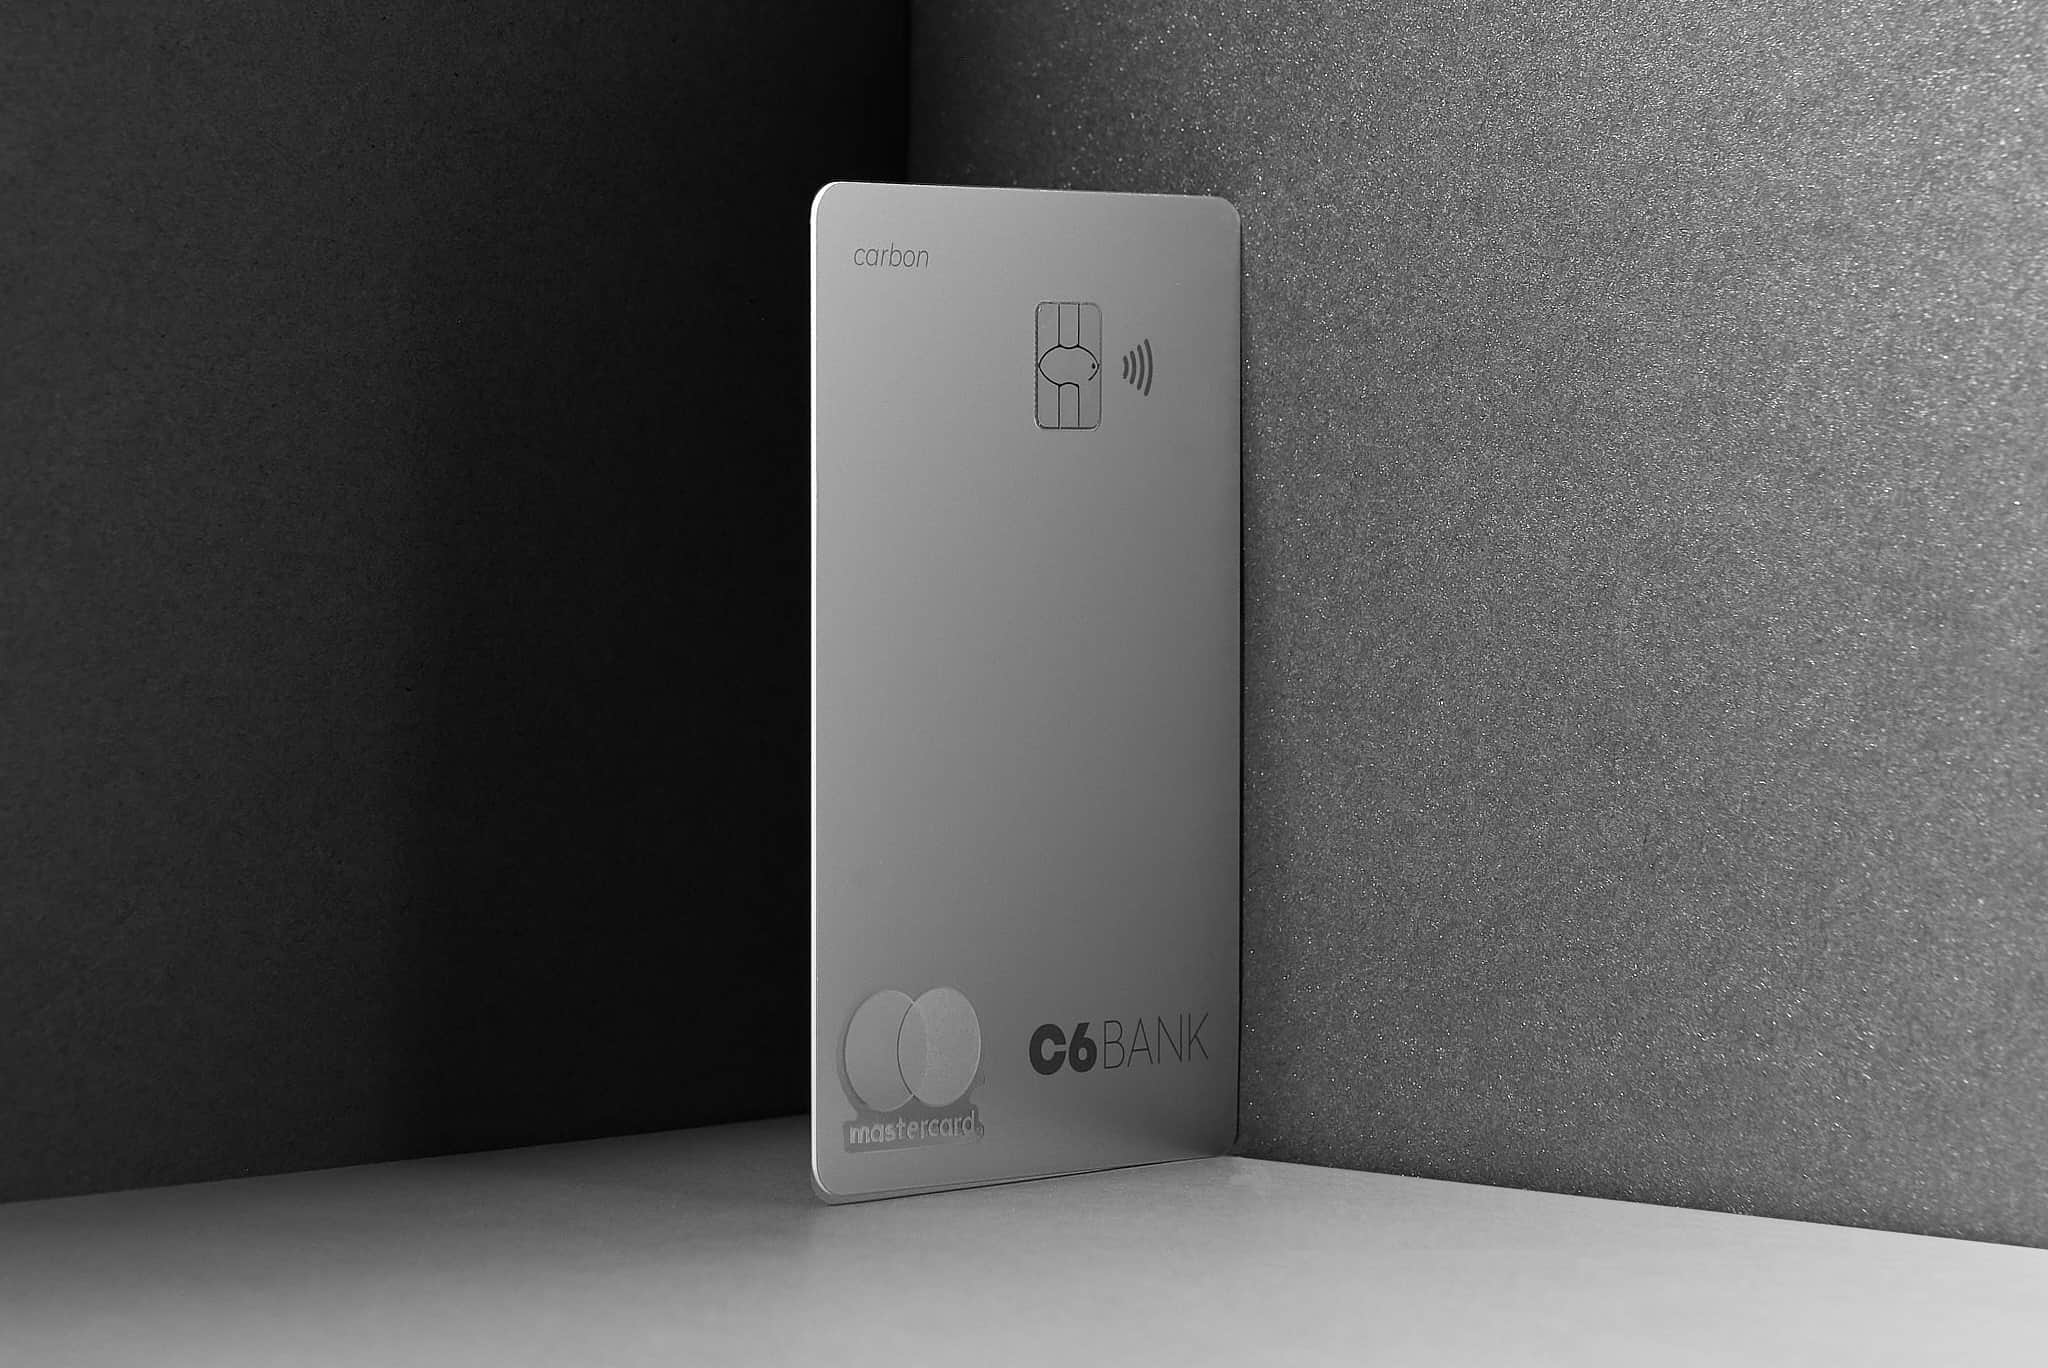 Foto do cartão C6 Carbon Mastercard Black prateado na vertical apoiado em uma cartolina em tons de cinza